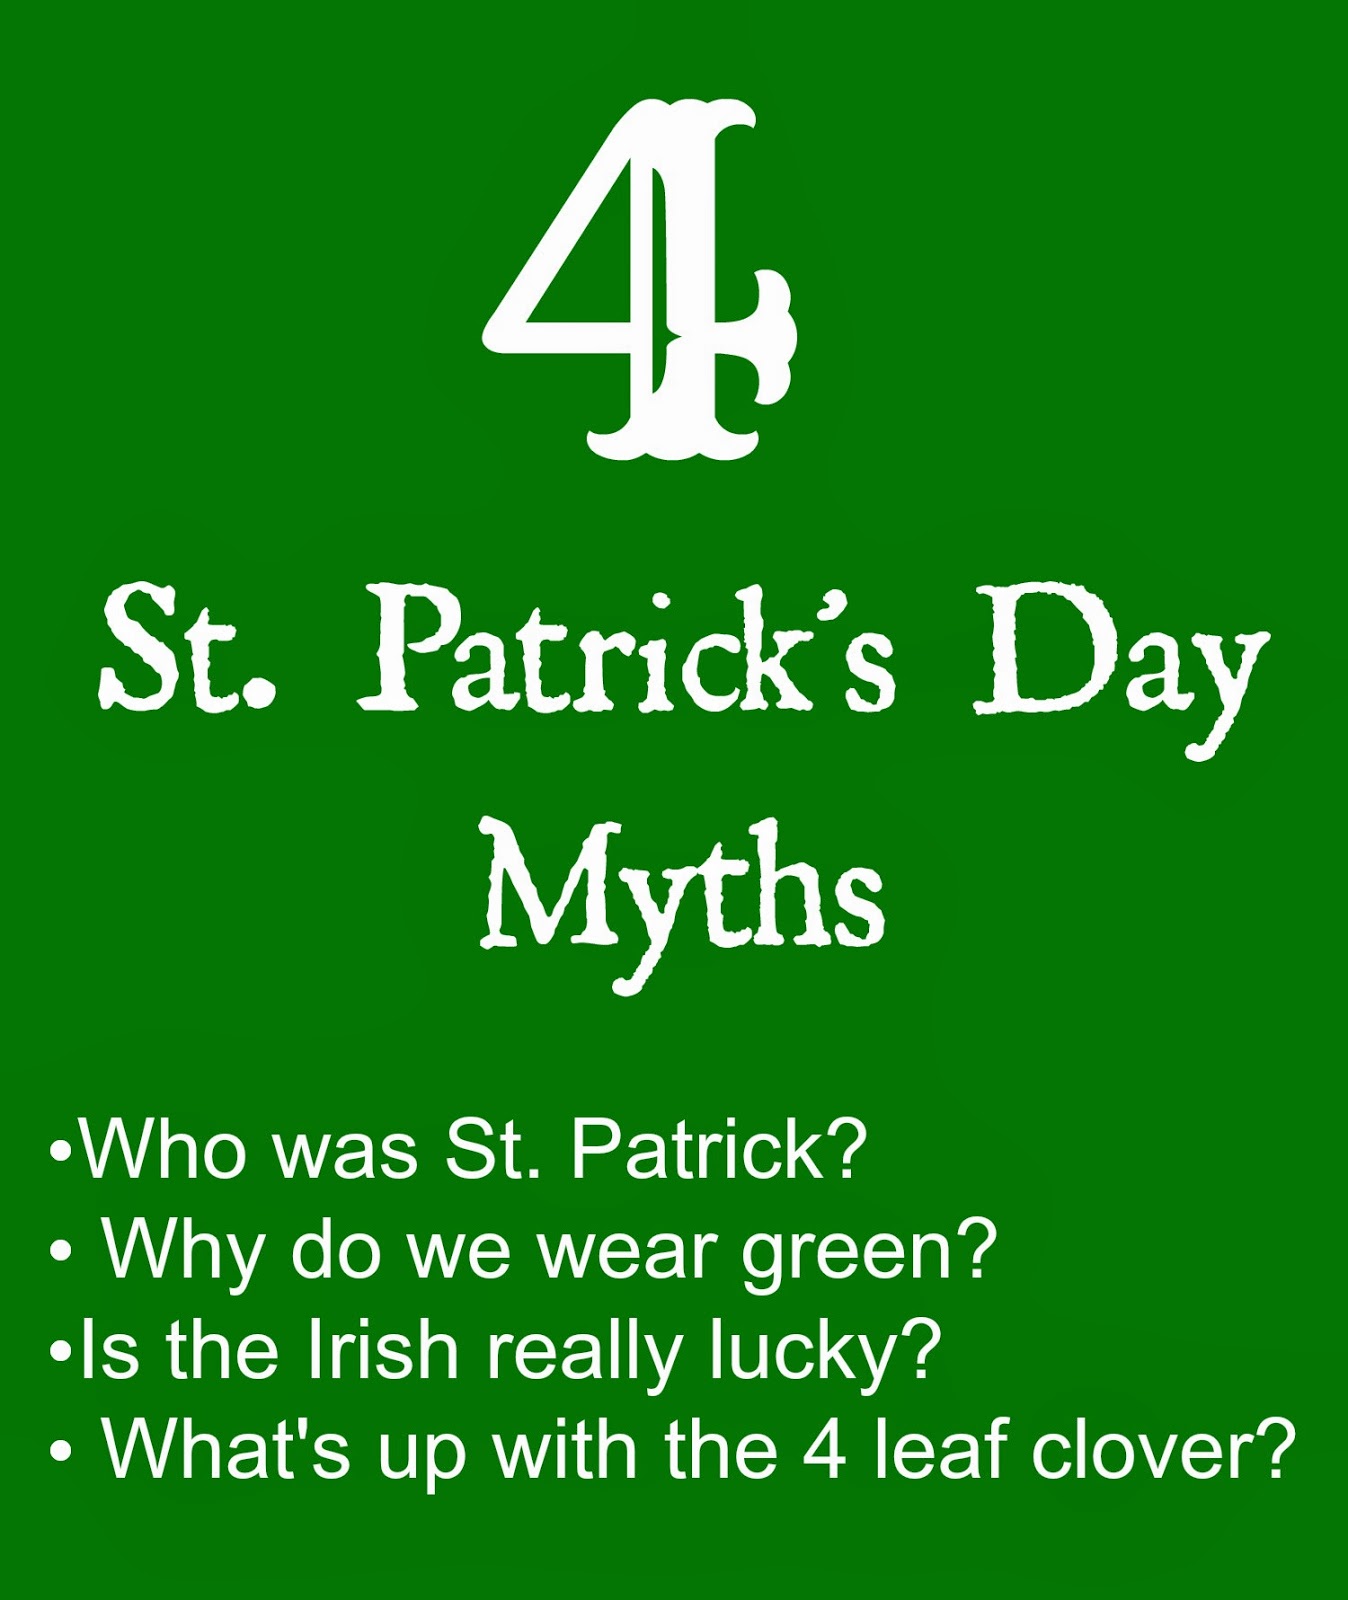 St. Patrick's Day Myths